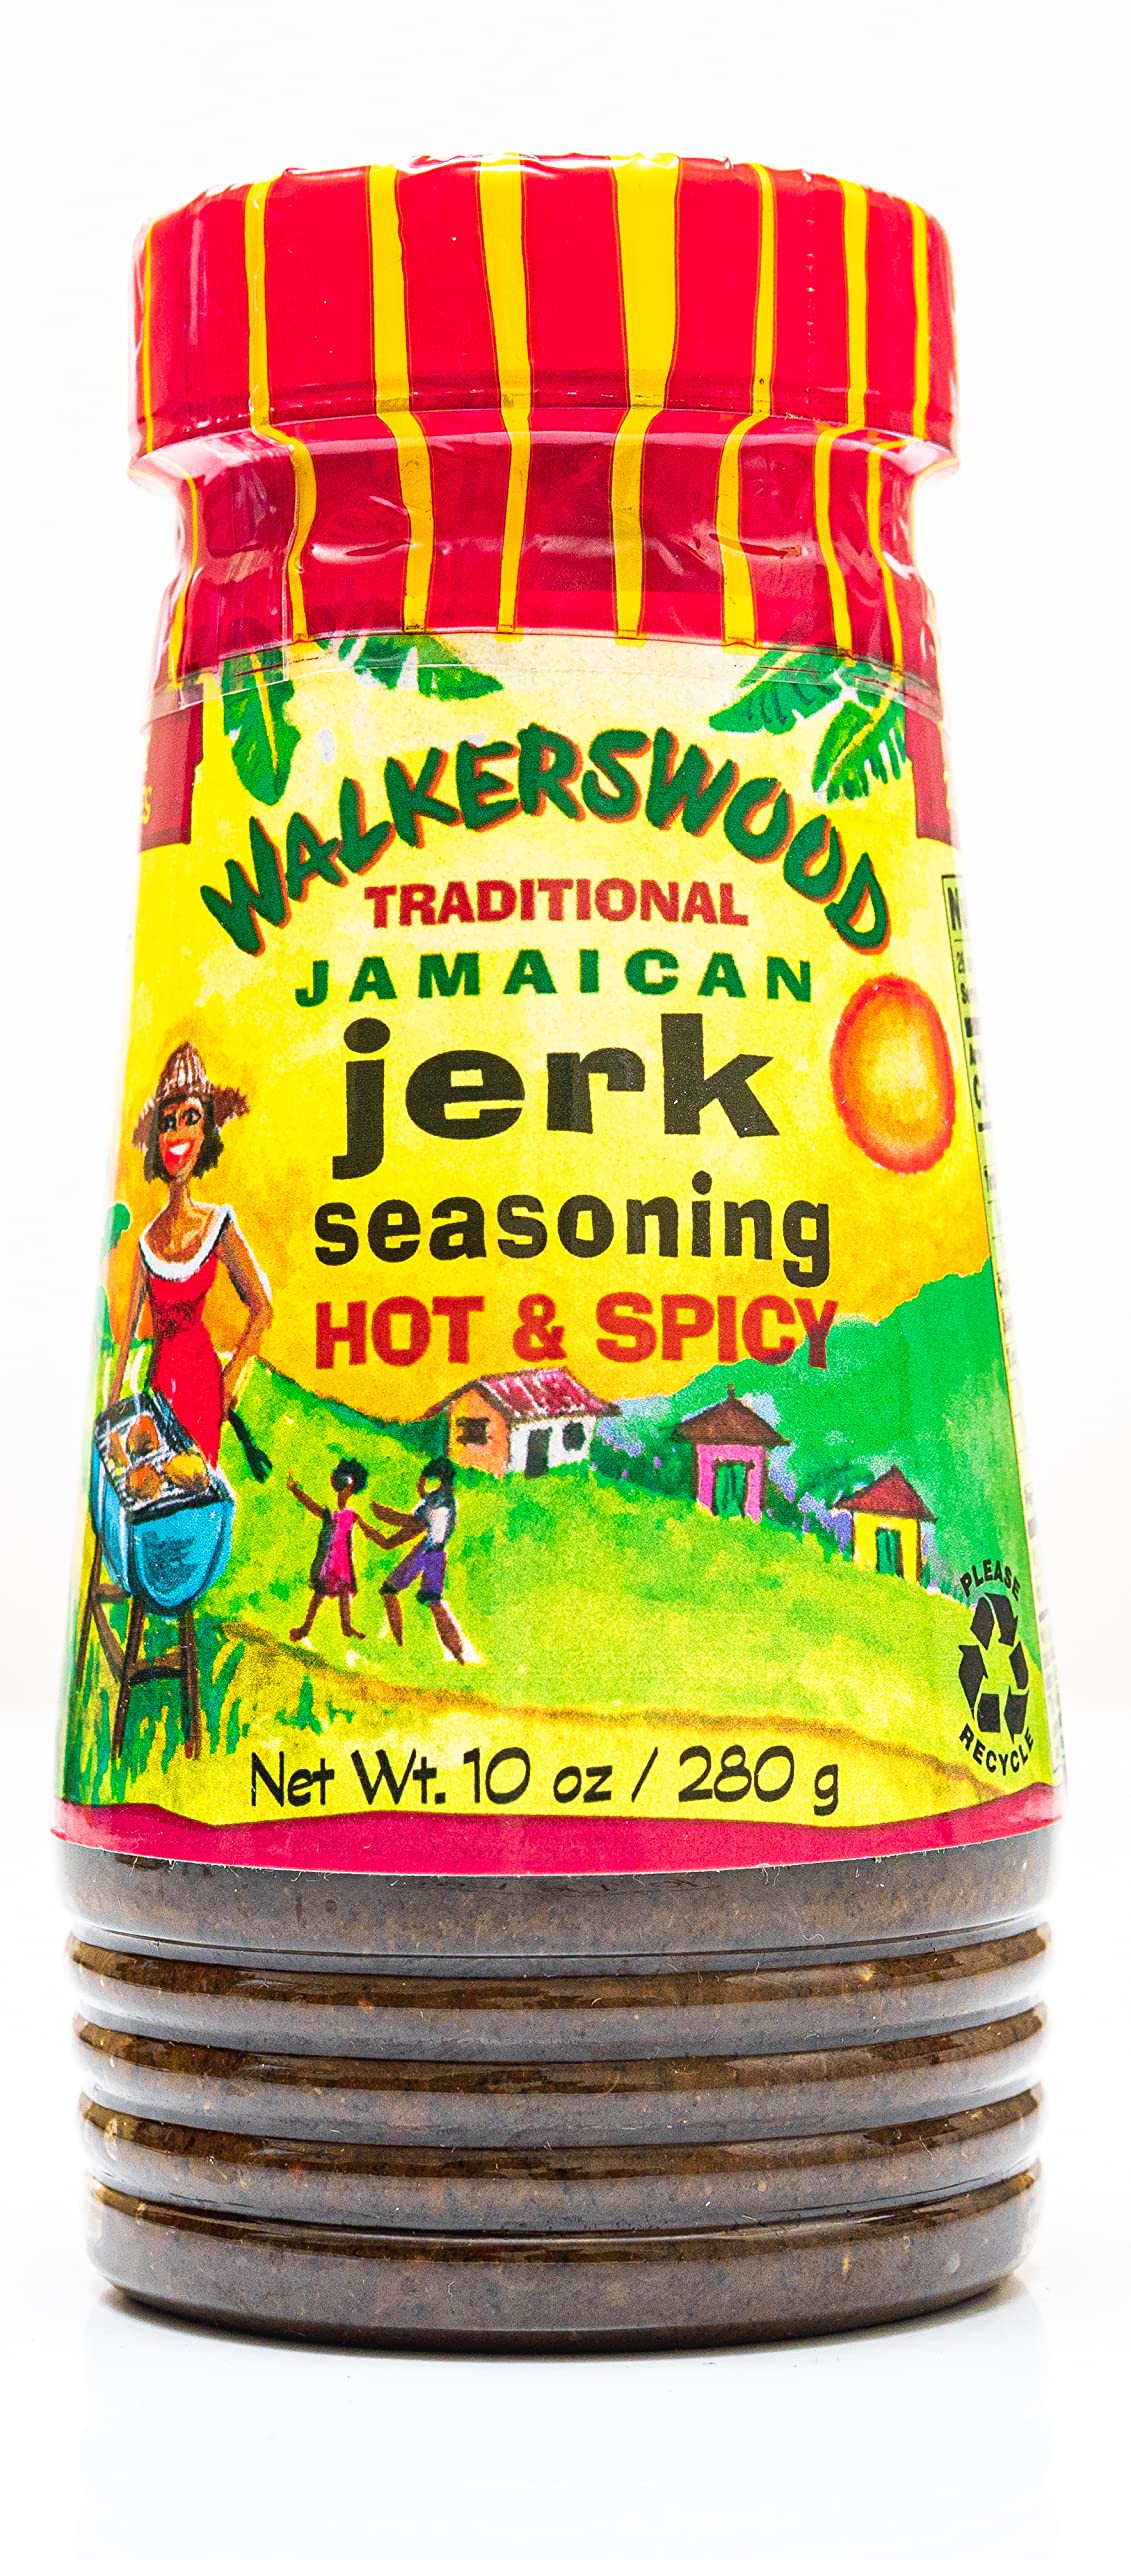 Walkerswood Traditional Jamaican Jerk Seasoning, Hot & Spicy, 10 oz